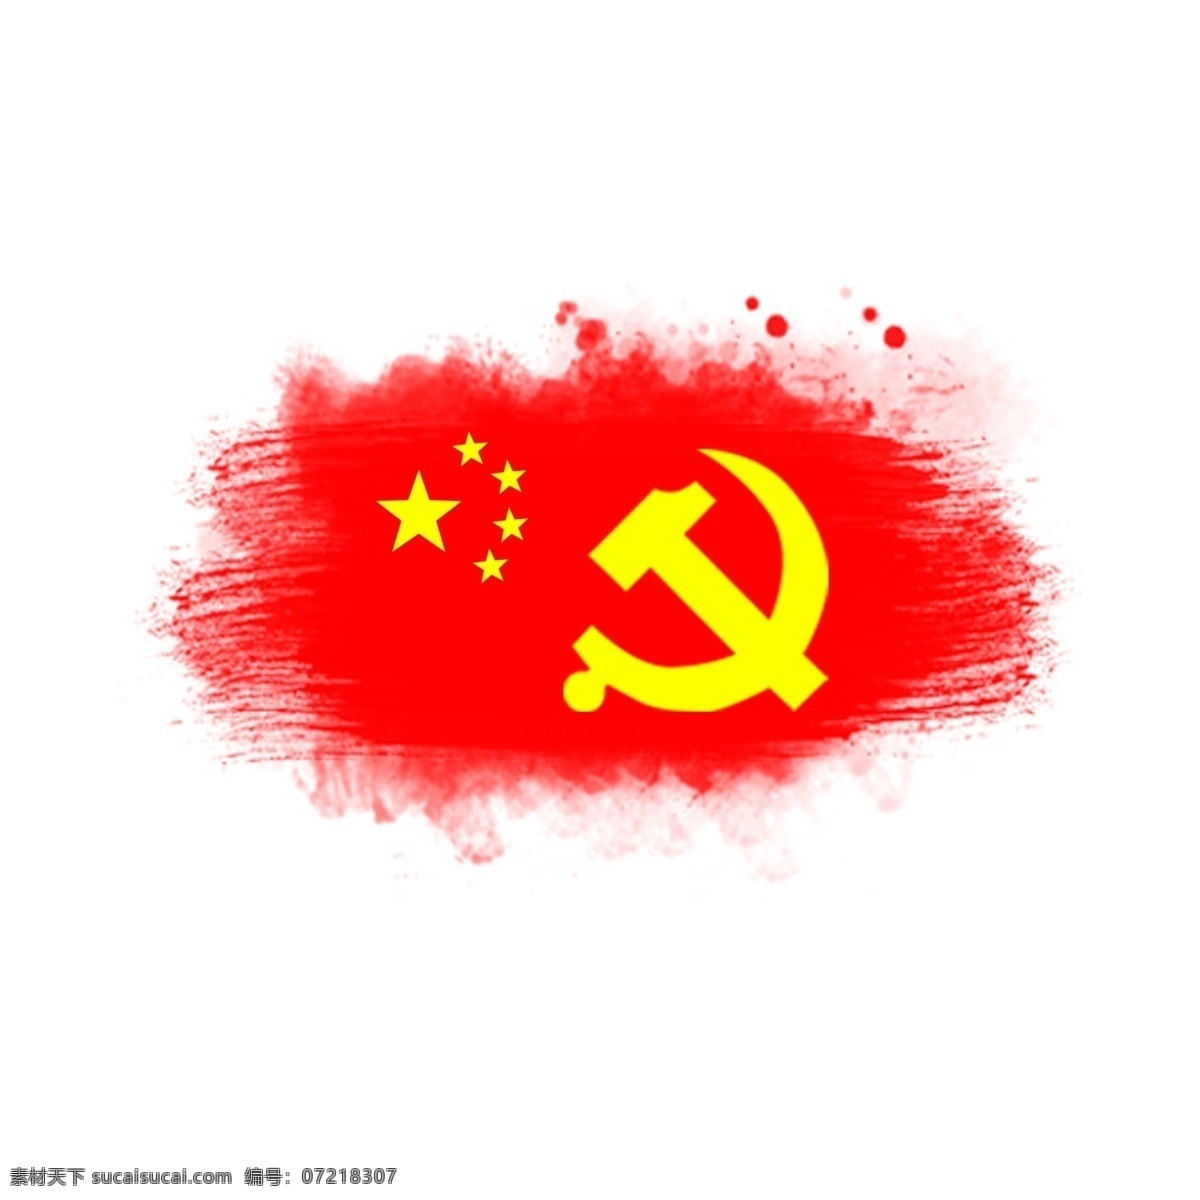 建军节 元素 文字 五角星 六 镰刀 红色 91周年 中国